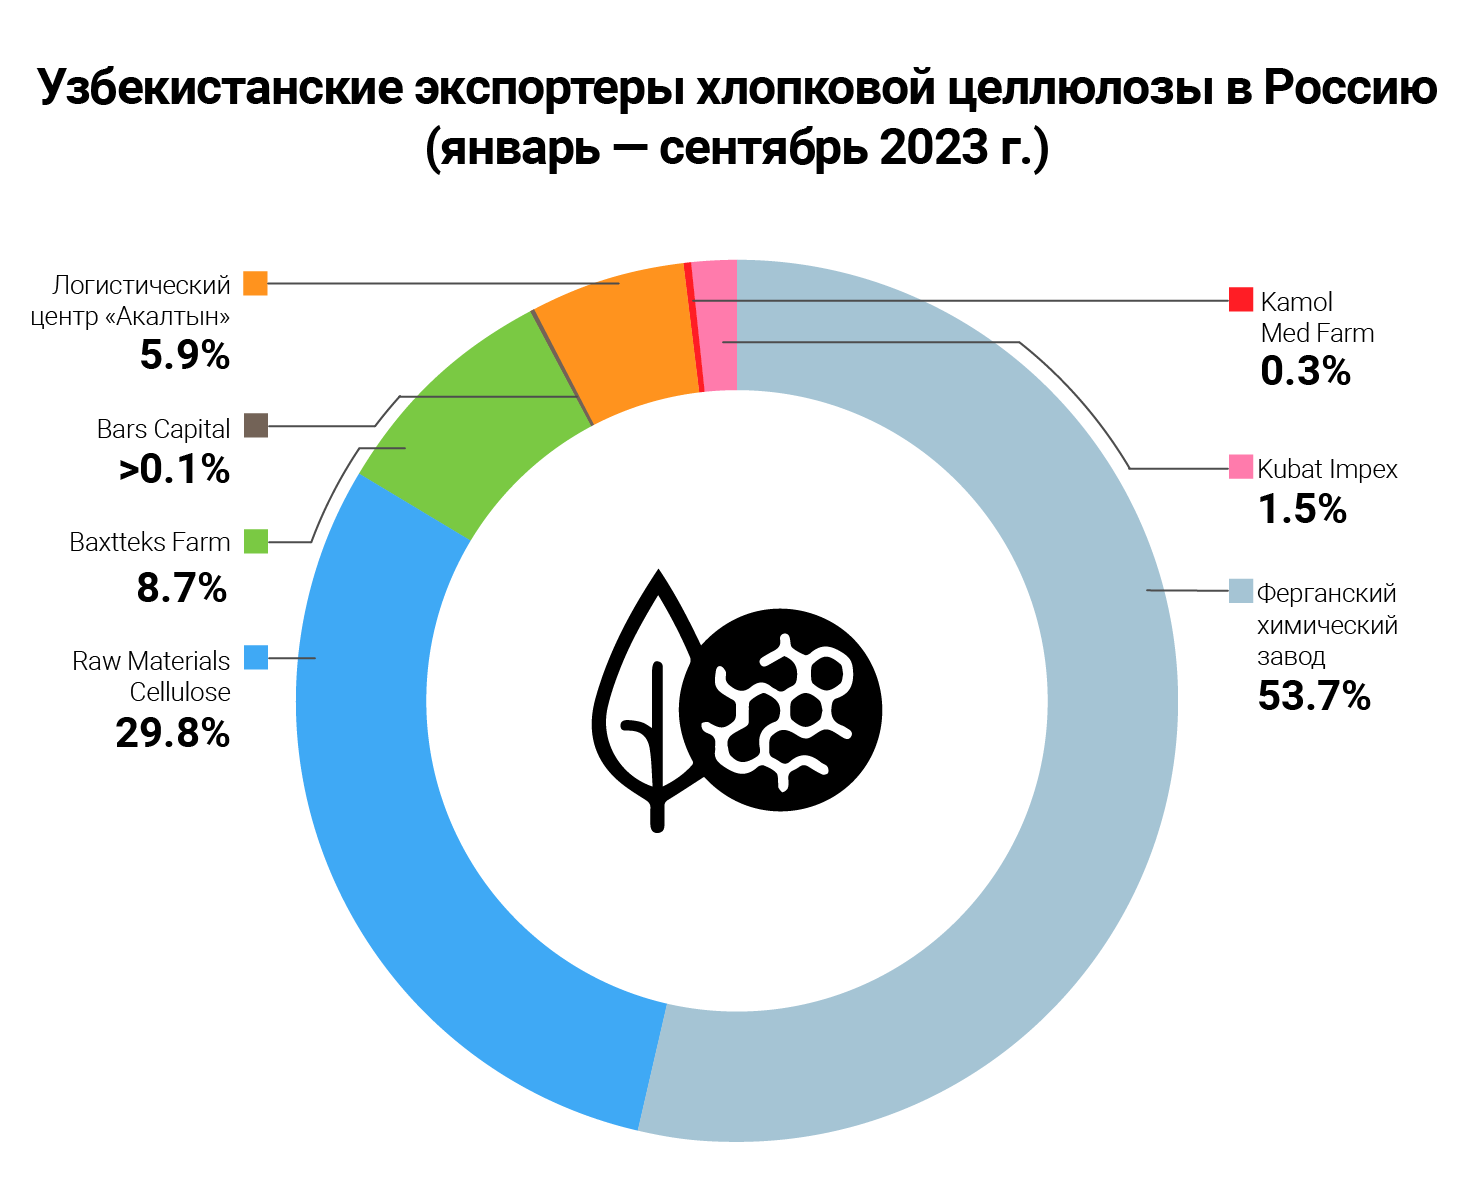 investigations/cotton-pulp-uzbek-infographic-rus.png